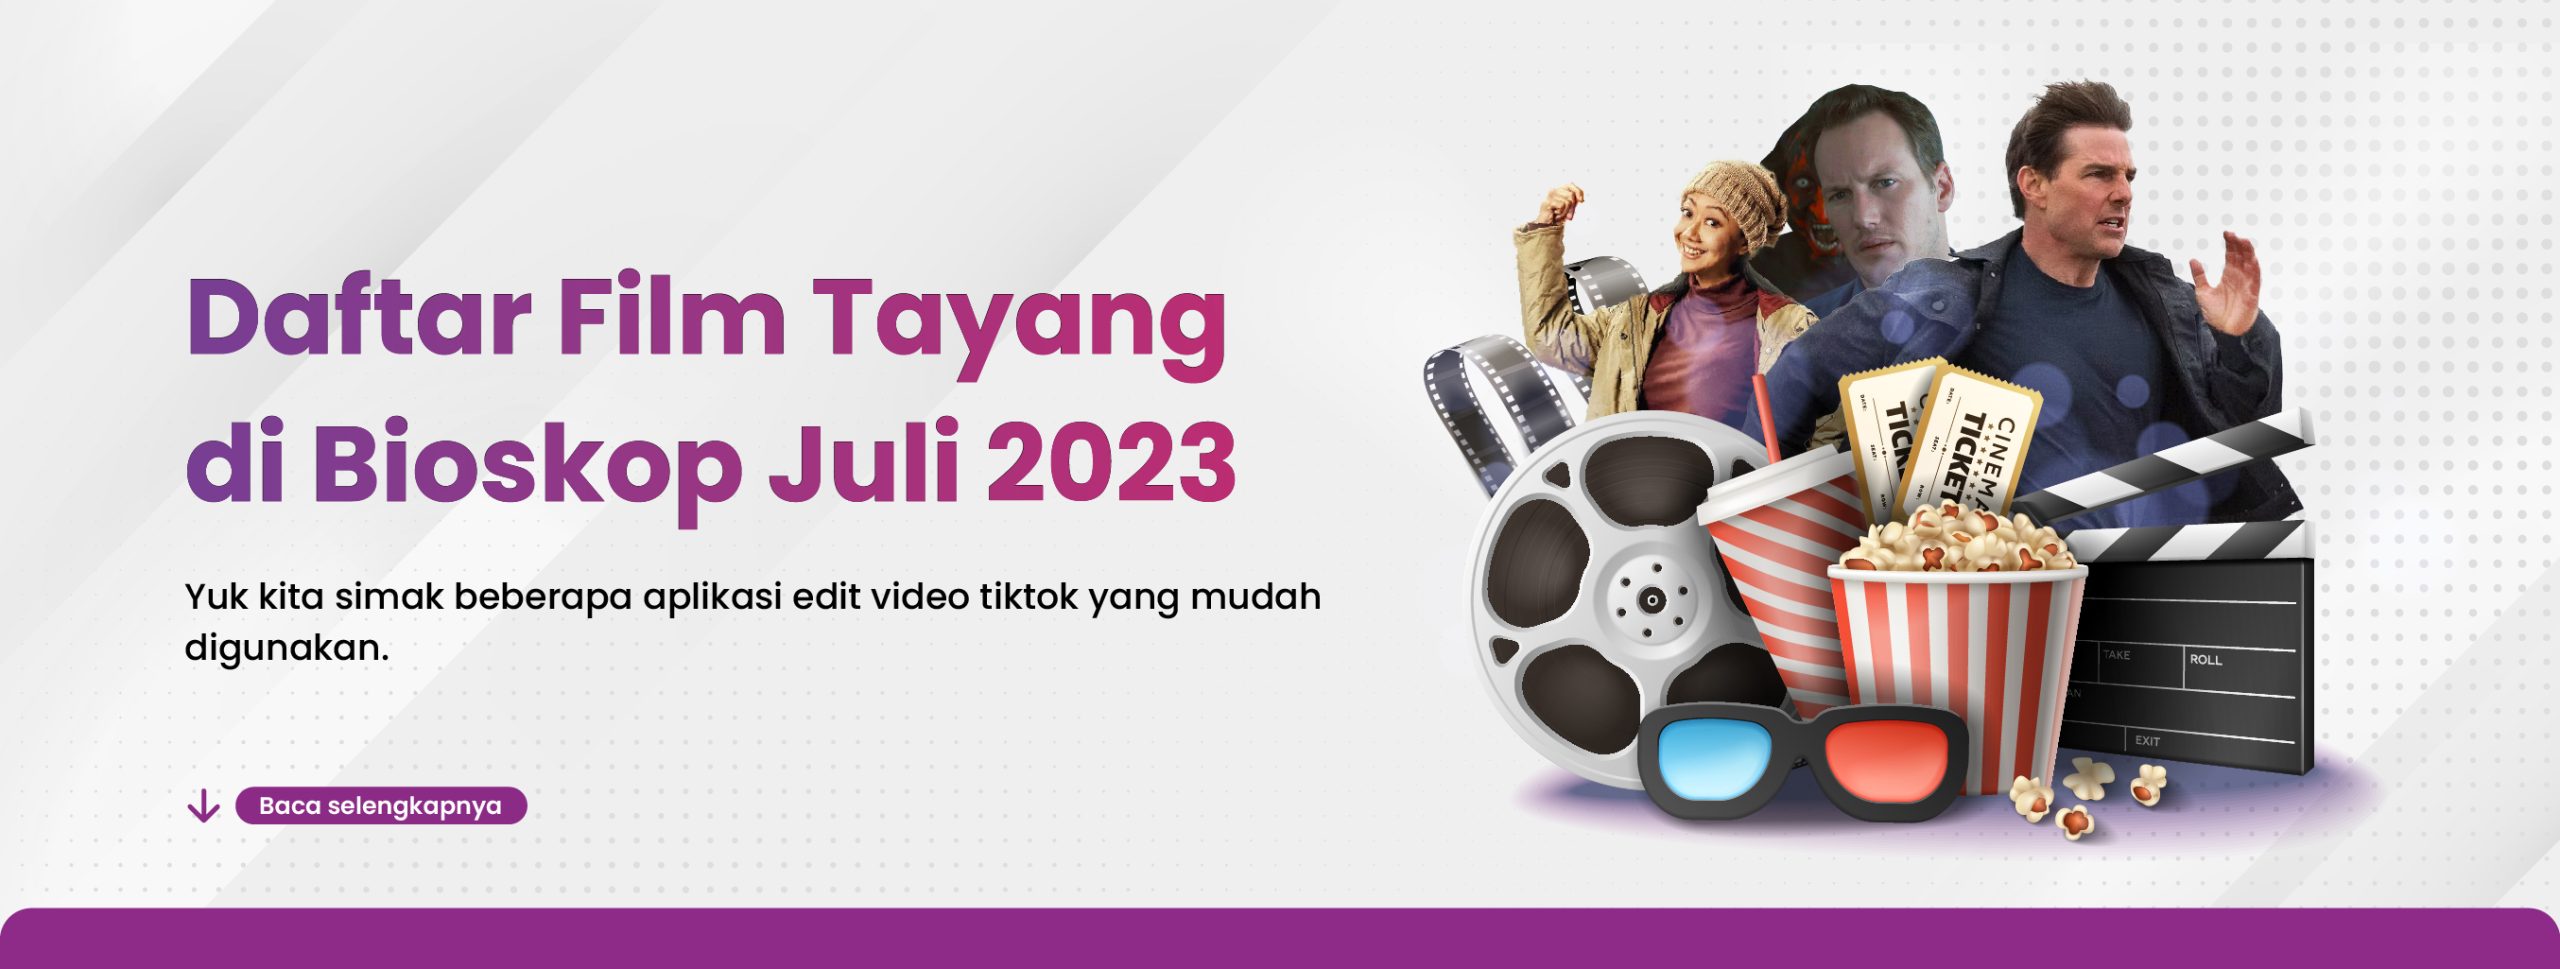 Daftar Film Tayang di Bioskop Juli 2023